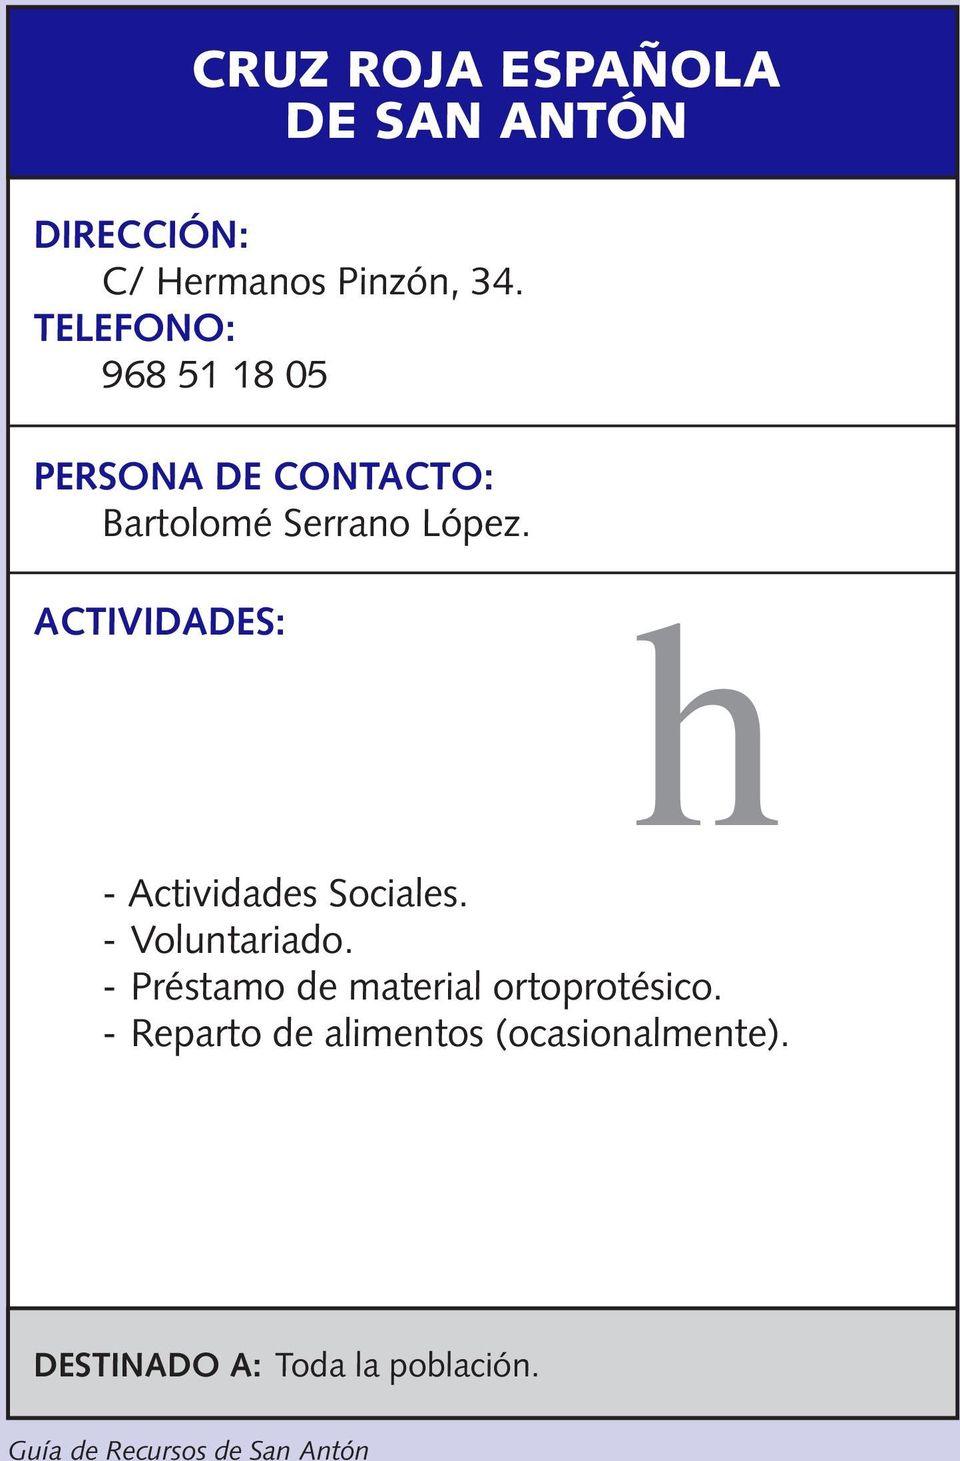 h - Actividades Sociales. - Voluntariado.